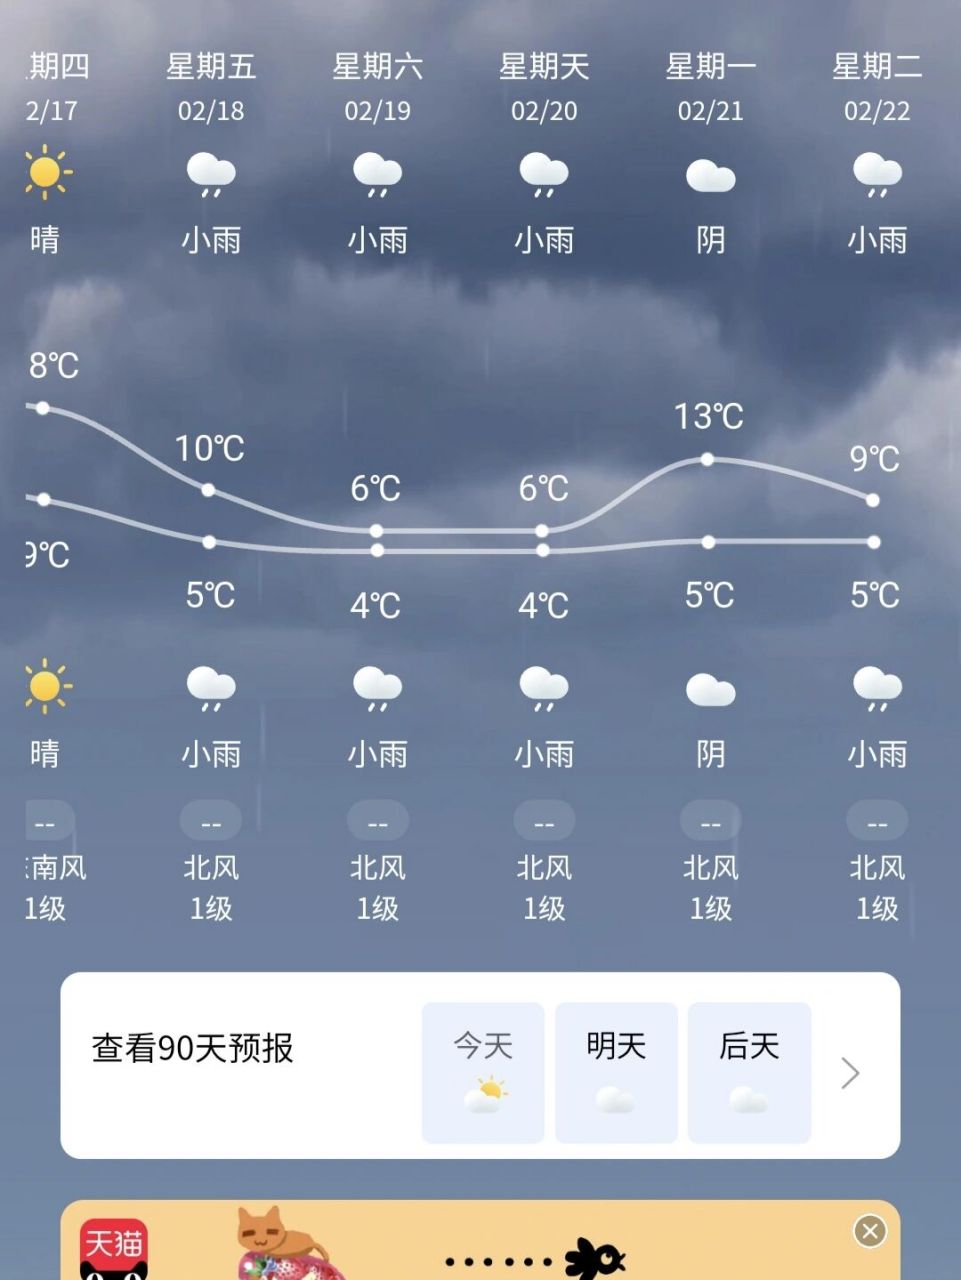 调侃广东的天气图片图片